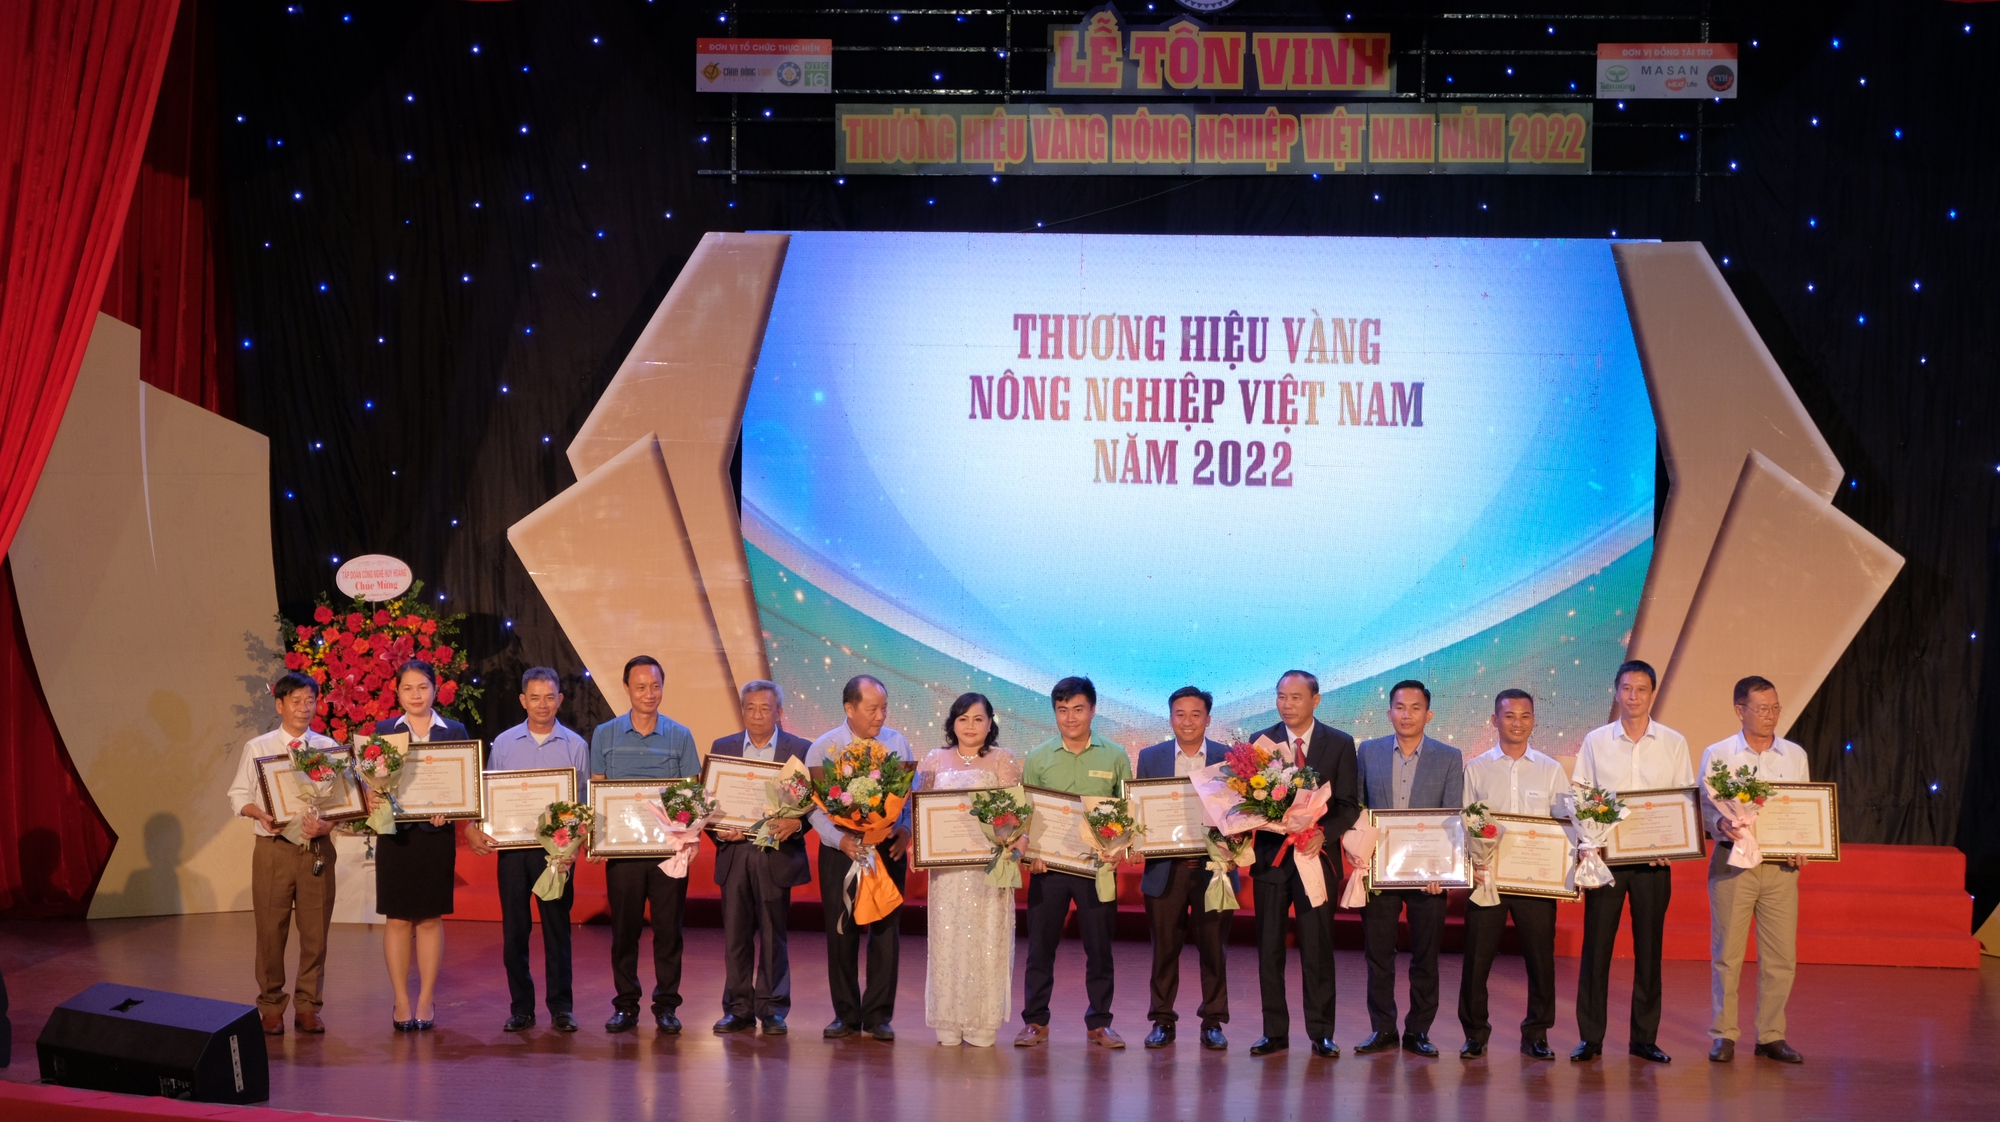 Tôn vinh 126 thương hiệu Vàng nông nghiệp Việt Nam năm 2022 - Ảnh 2.